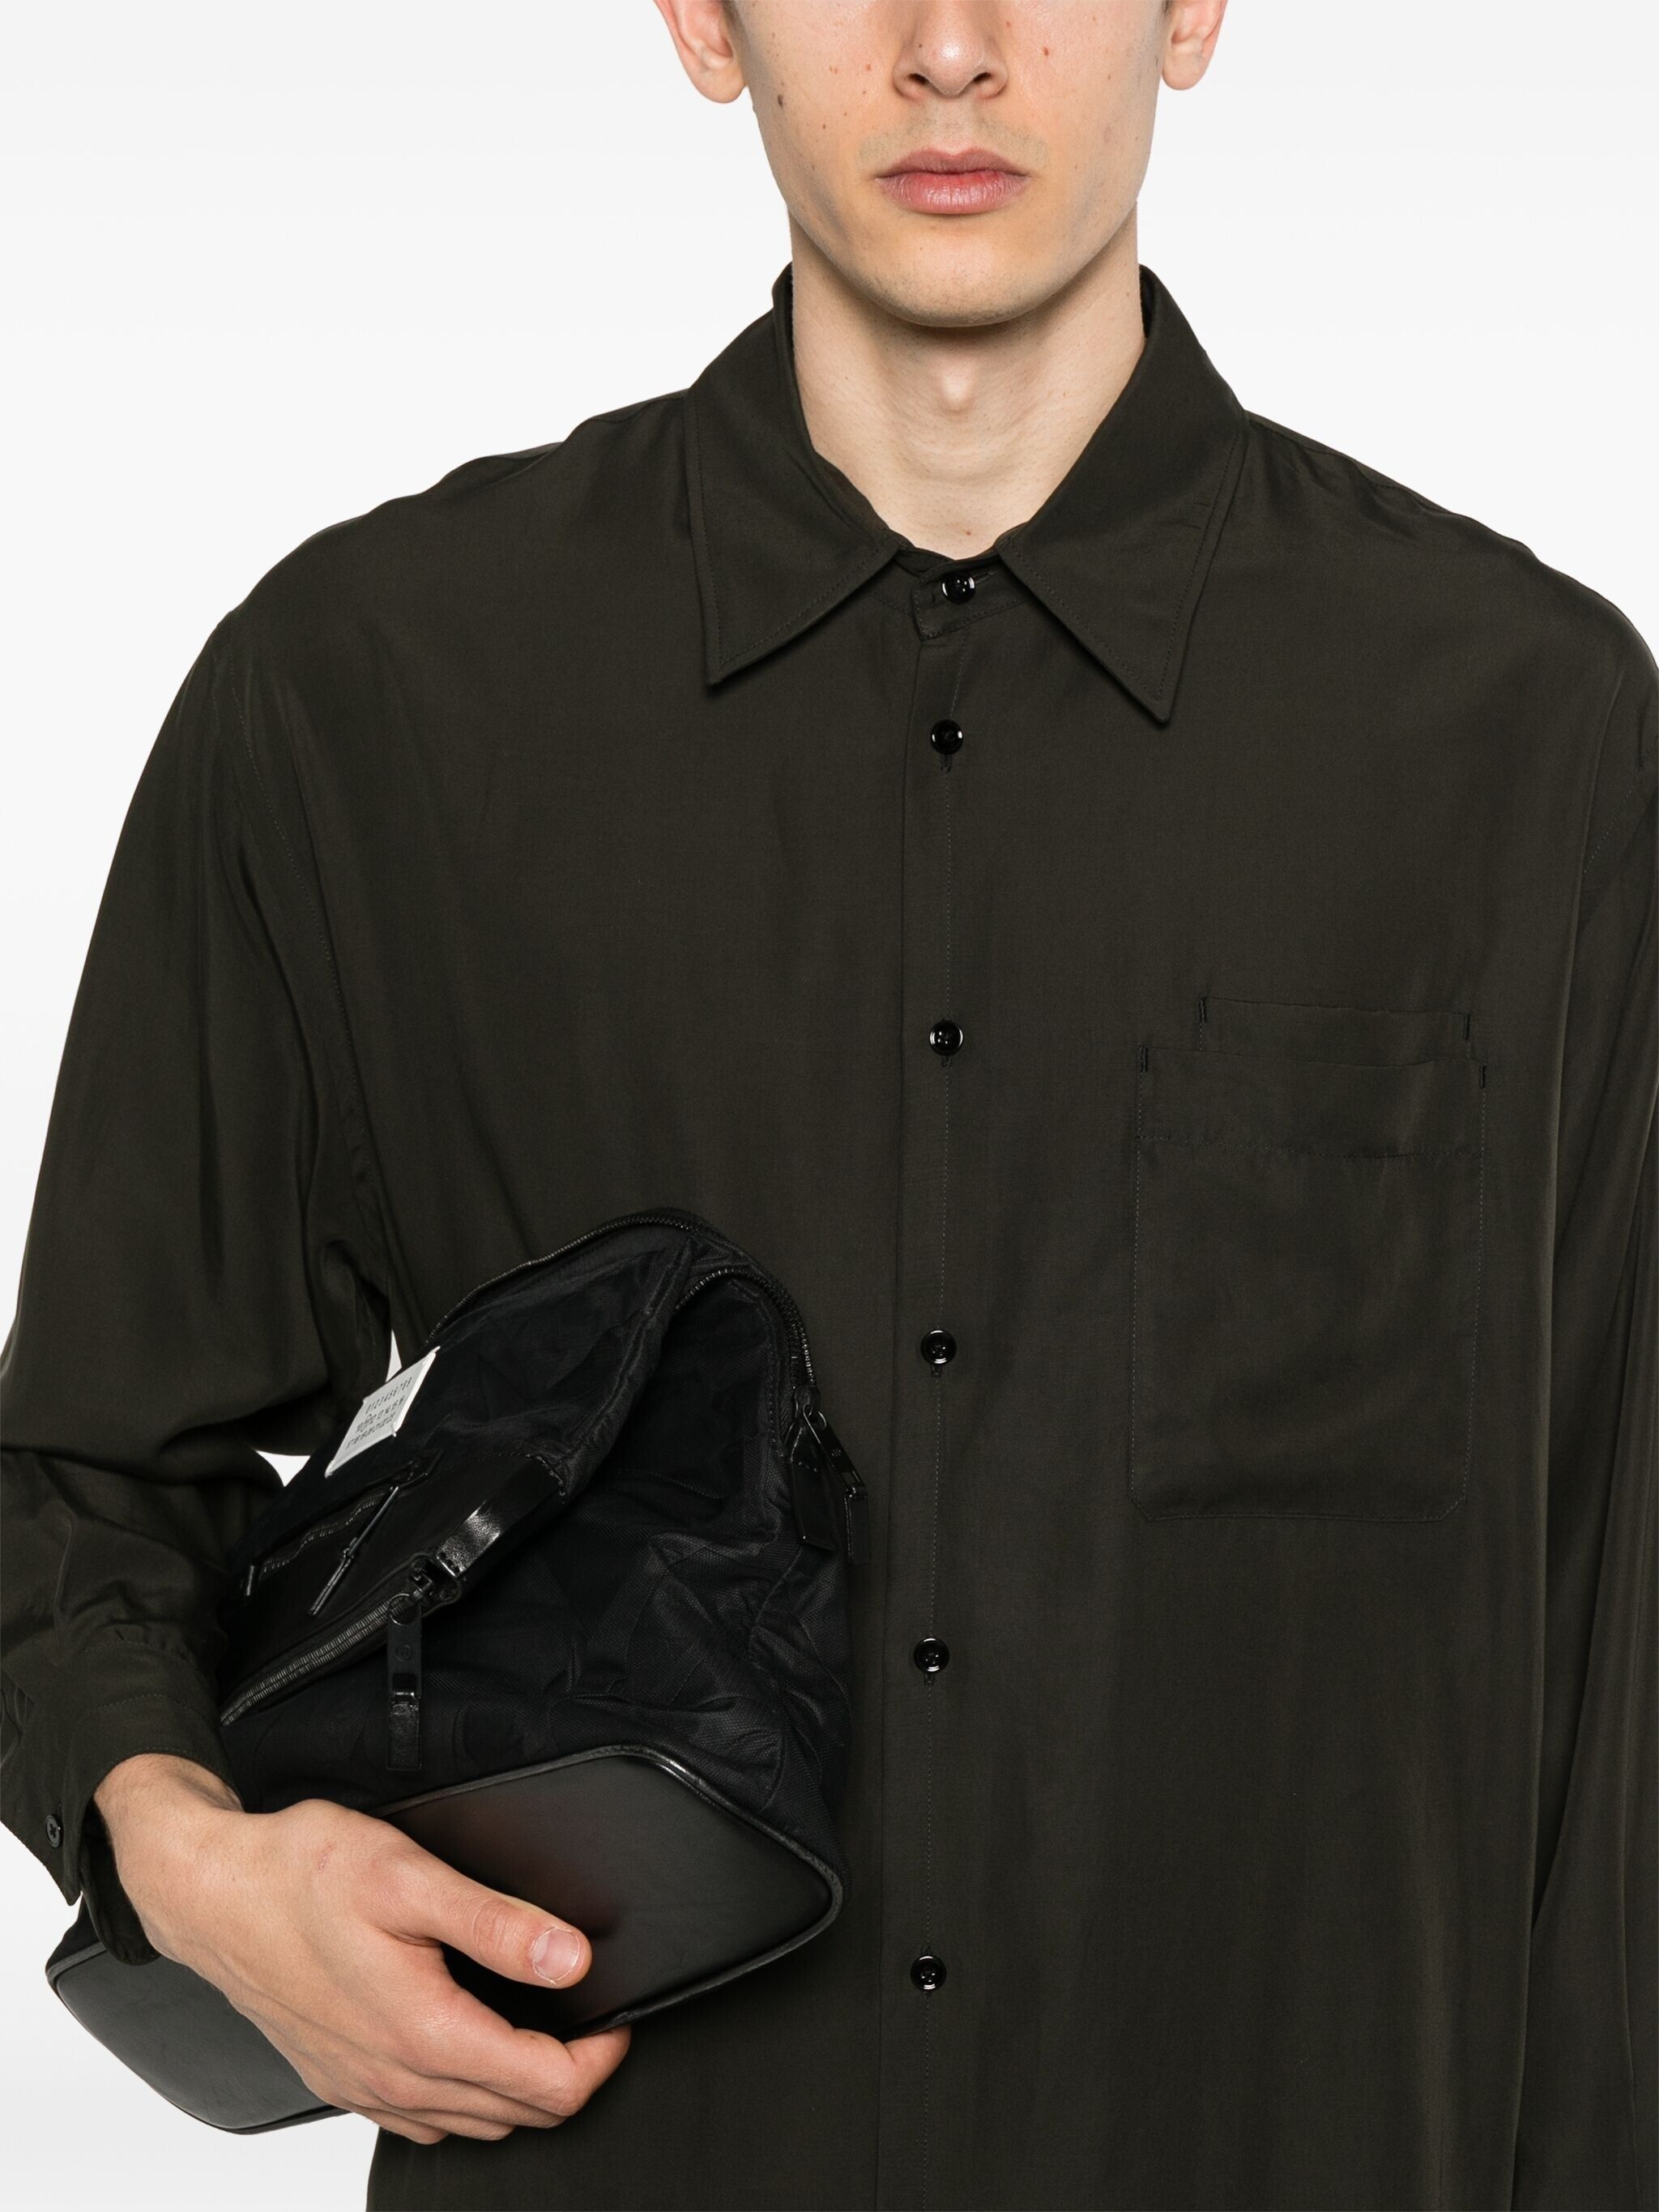 double-pocket lyocell shirt - 6